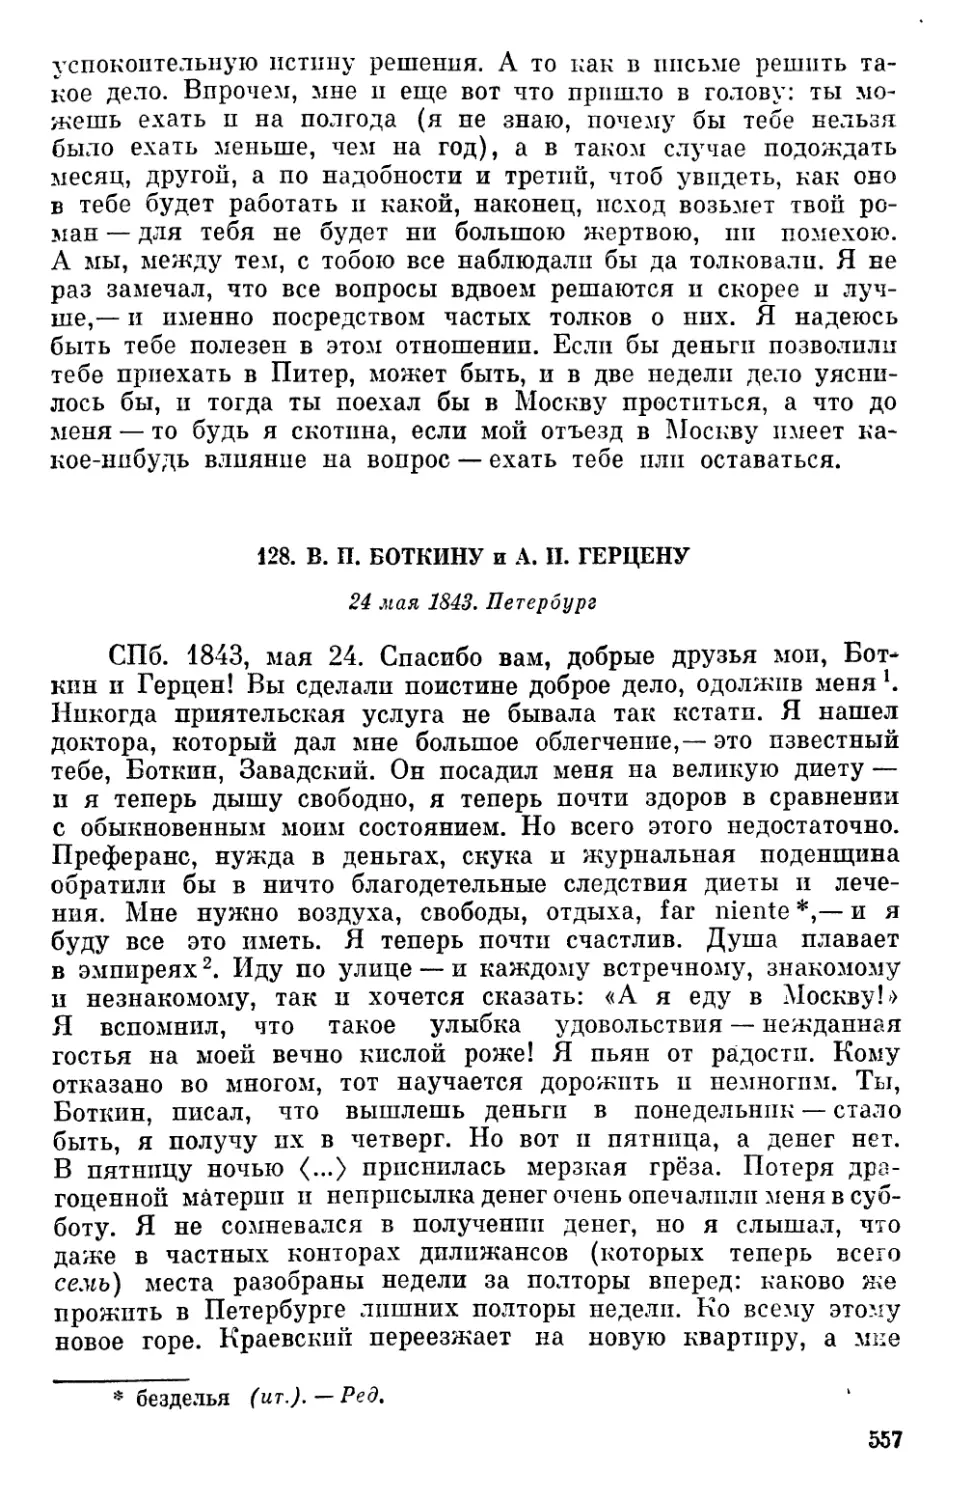 128. В. П. Боткину, и А. И. Герцену. 24 мая 1843